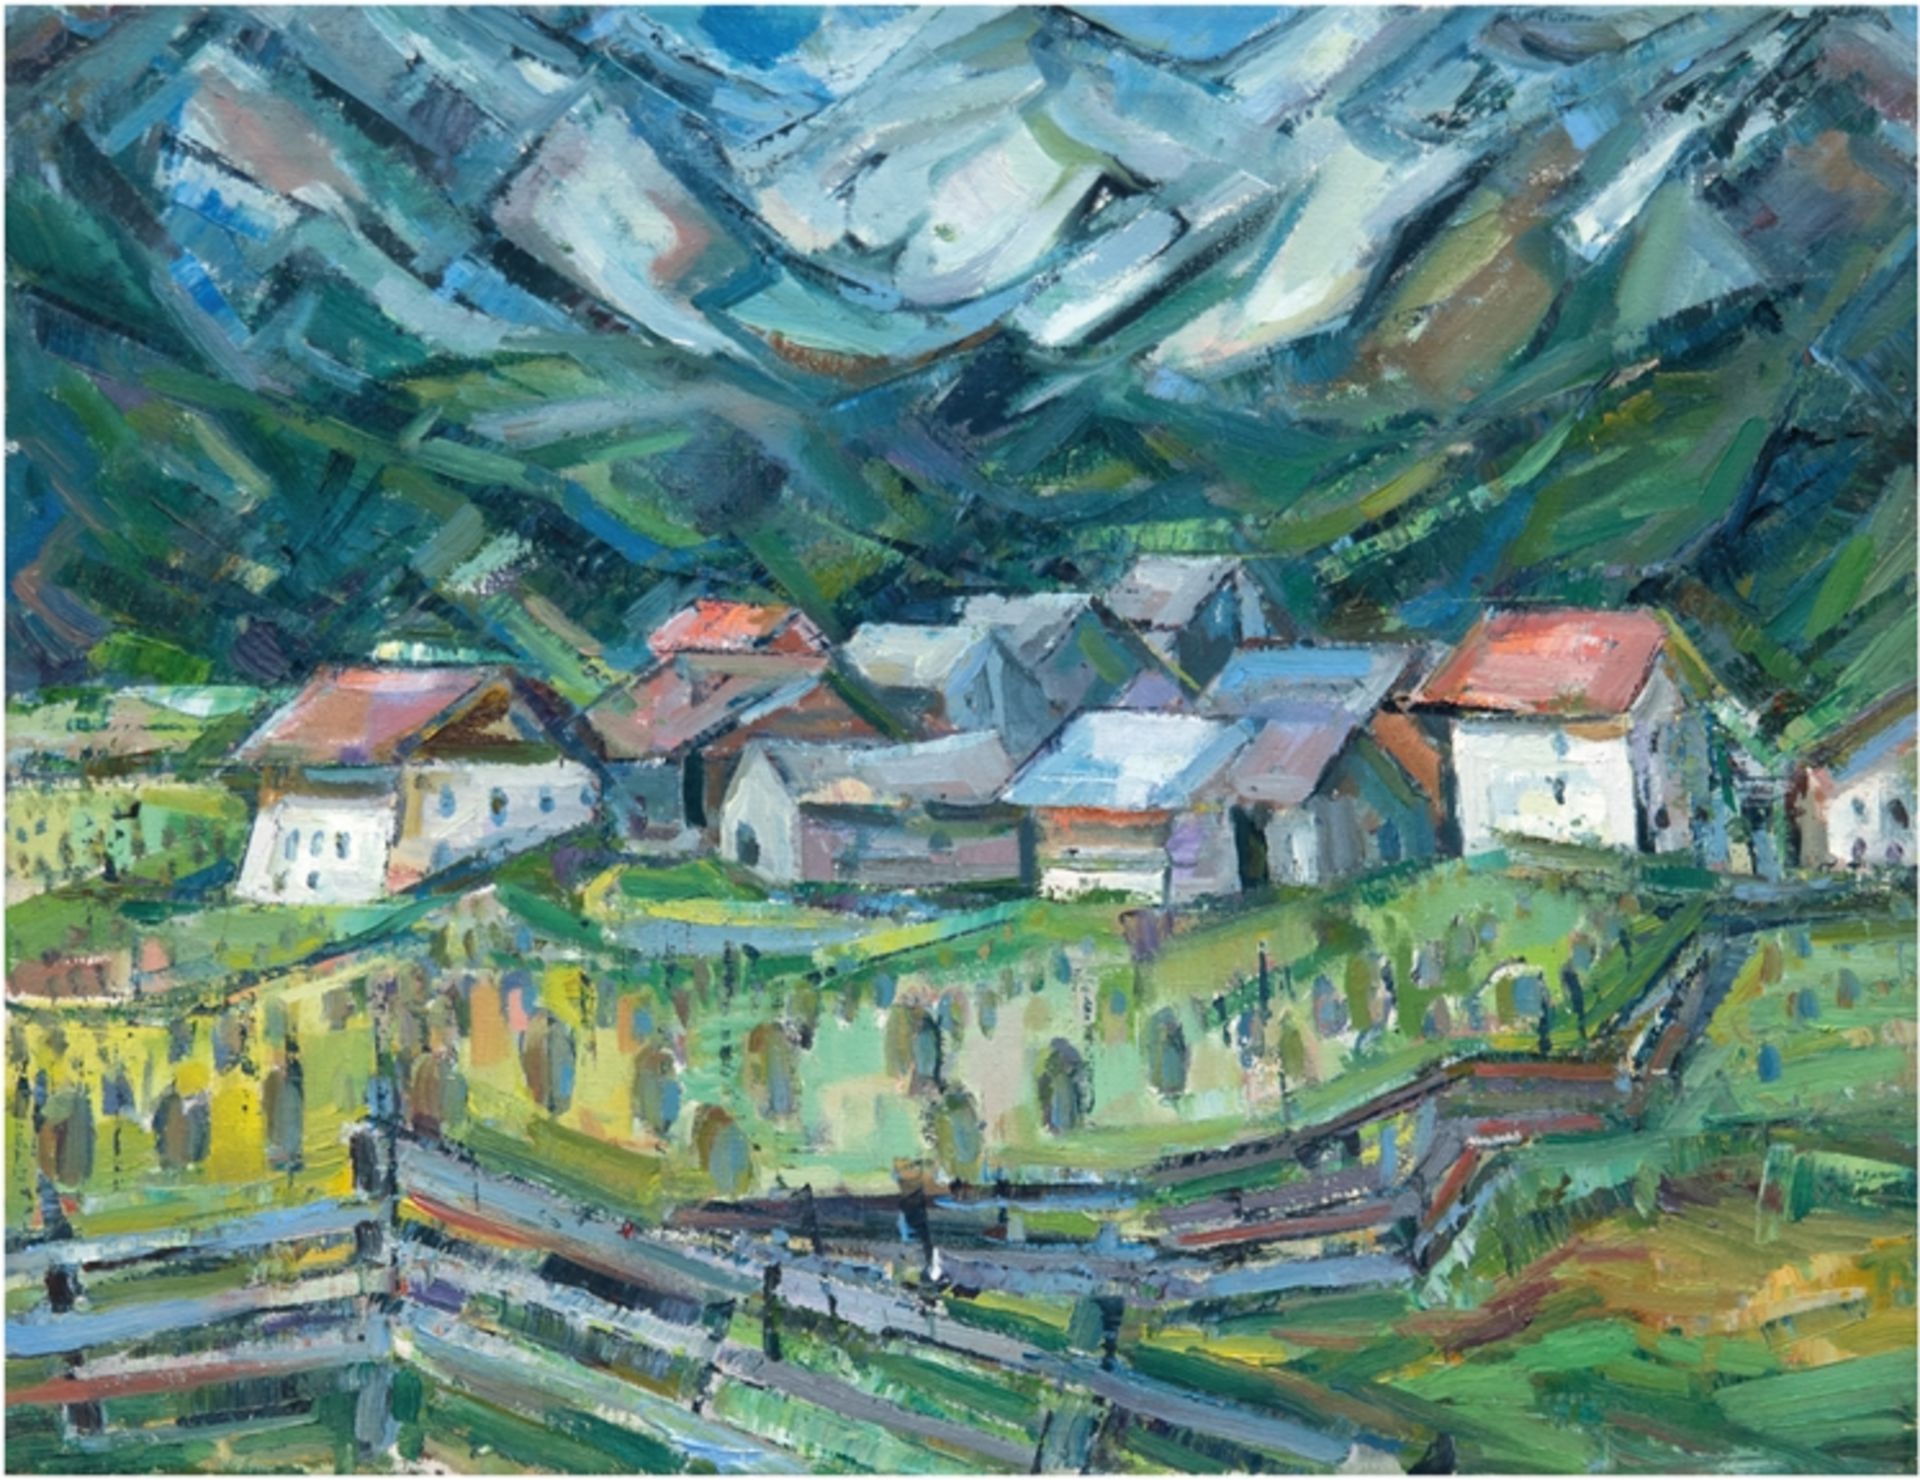 Landschaftsmaler "Alpendorf", Öl/Lw., unsign., verso bezeichnet "Steinhagen", 50x61 cm, ungerahmt